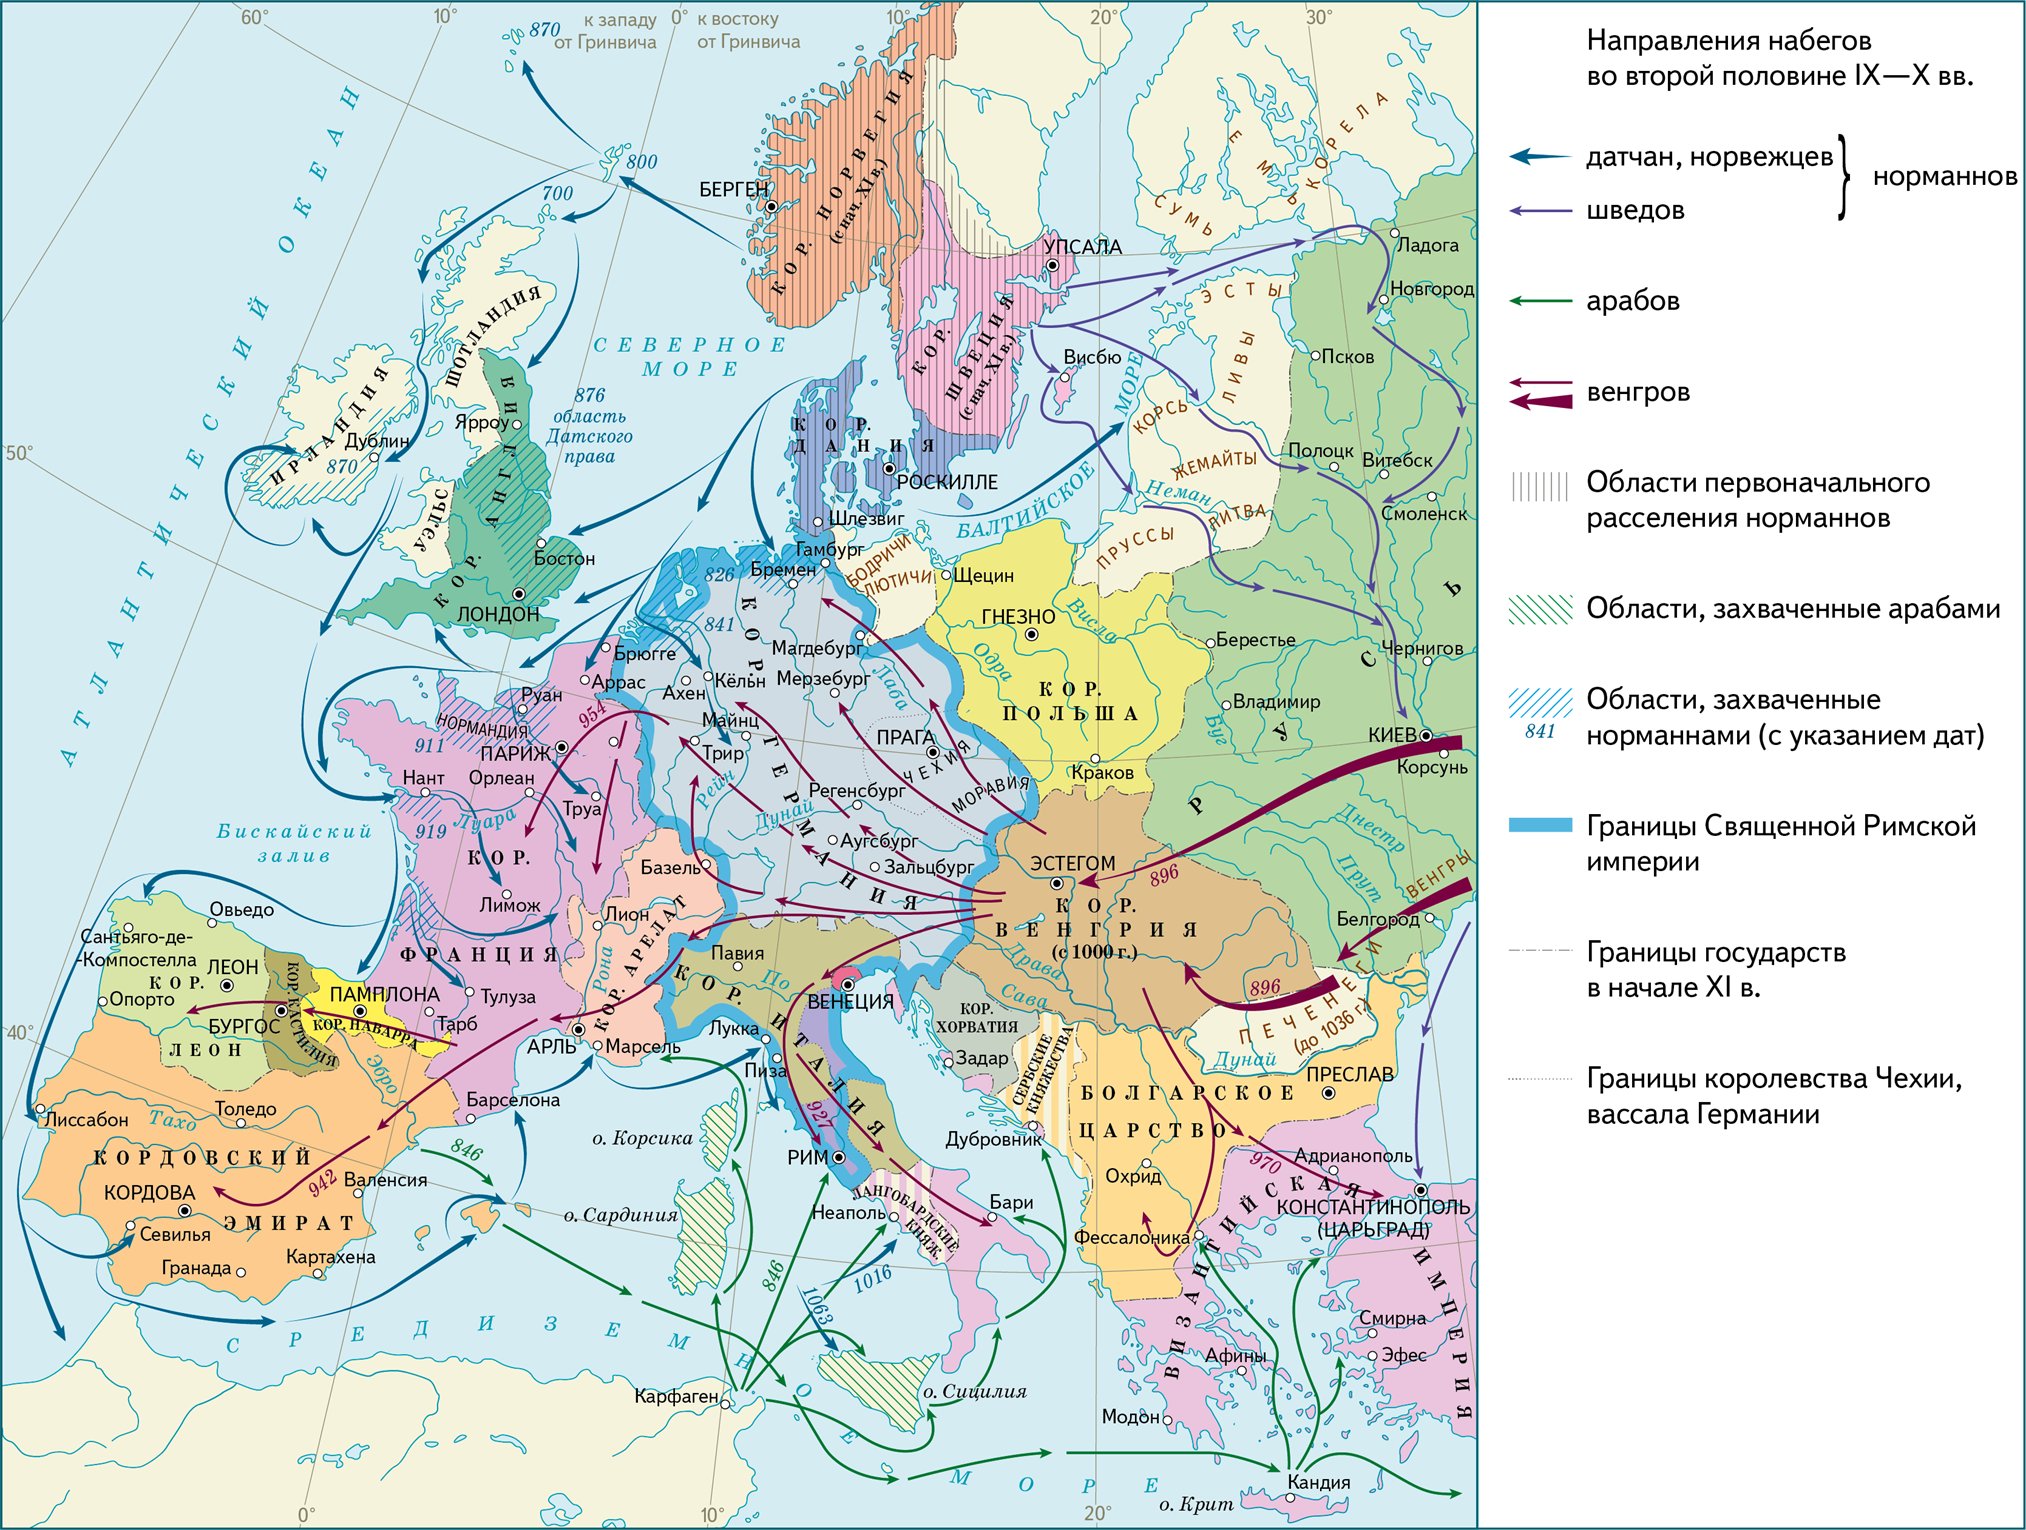 Завоевание норманнов в Европе 9-11 века. Завоевания норманнов в Европе в 9-11 веках карта. Карта завоевания норманнов и венгров в Европе в 9-11 веках. Карта завоевания норманнов и венгров в Европе. Государства европы в 9 11 веках